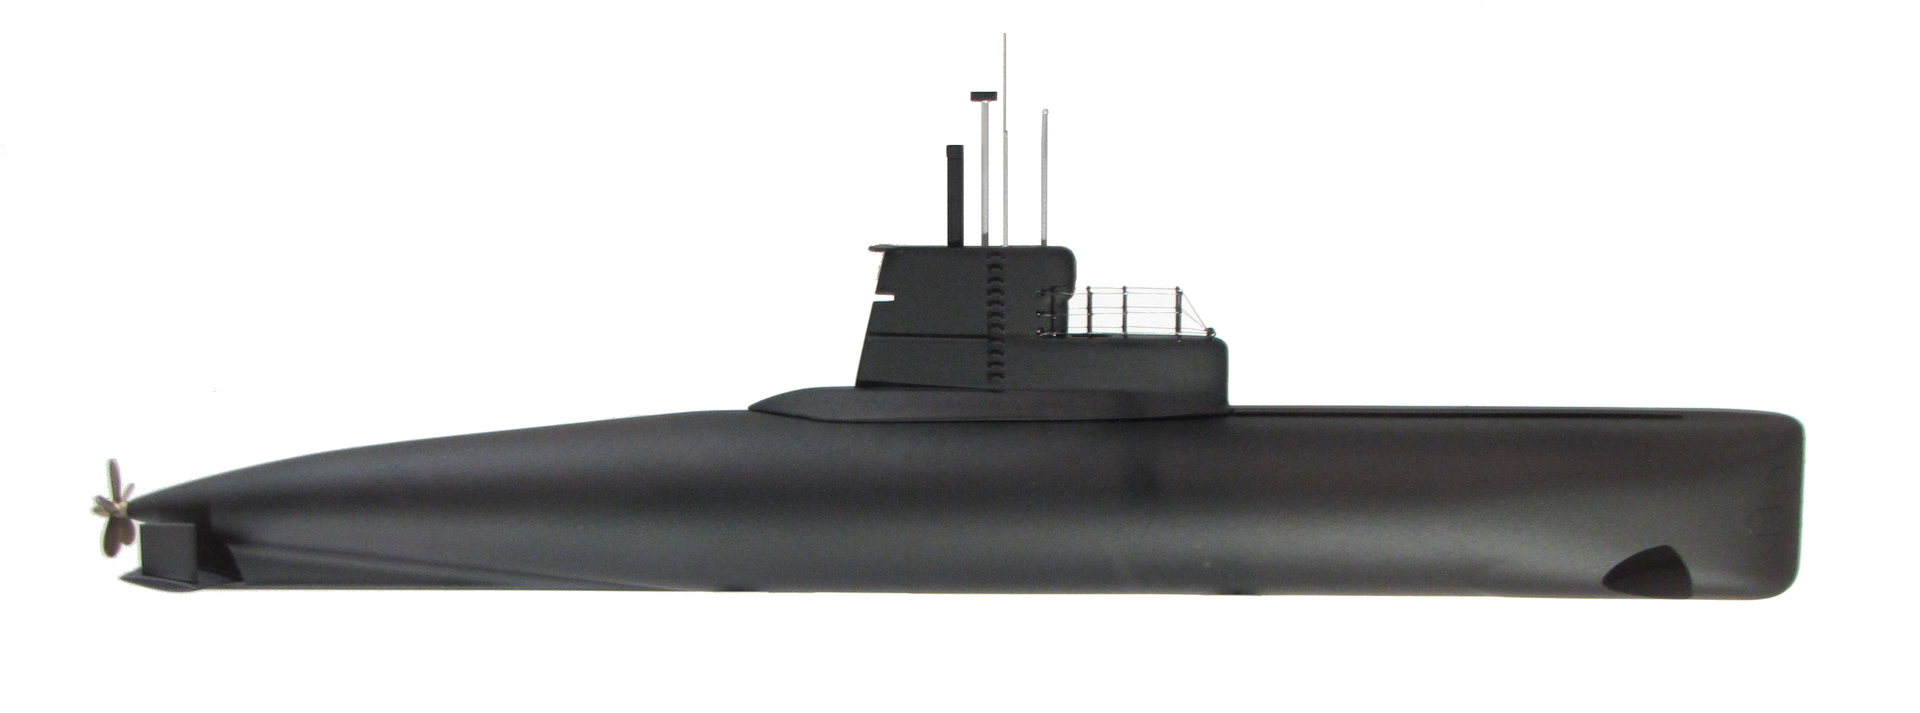 201型潛艇側視圖